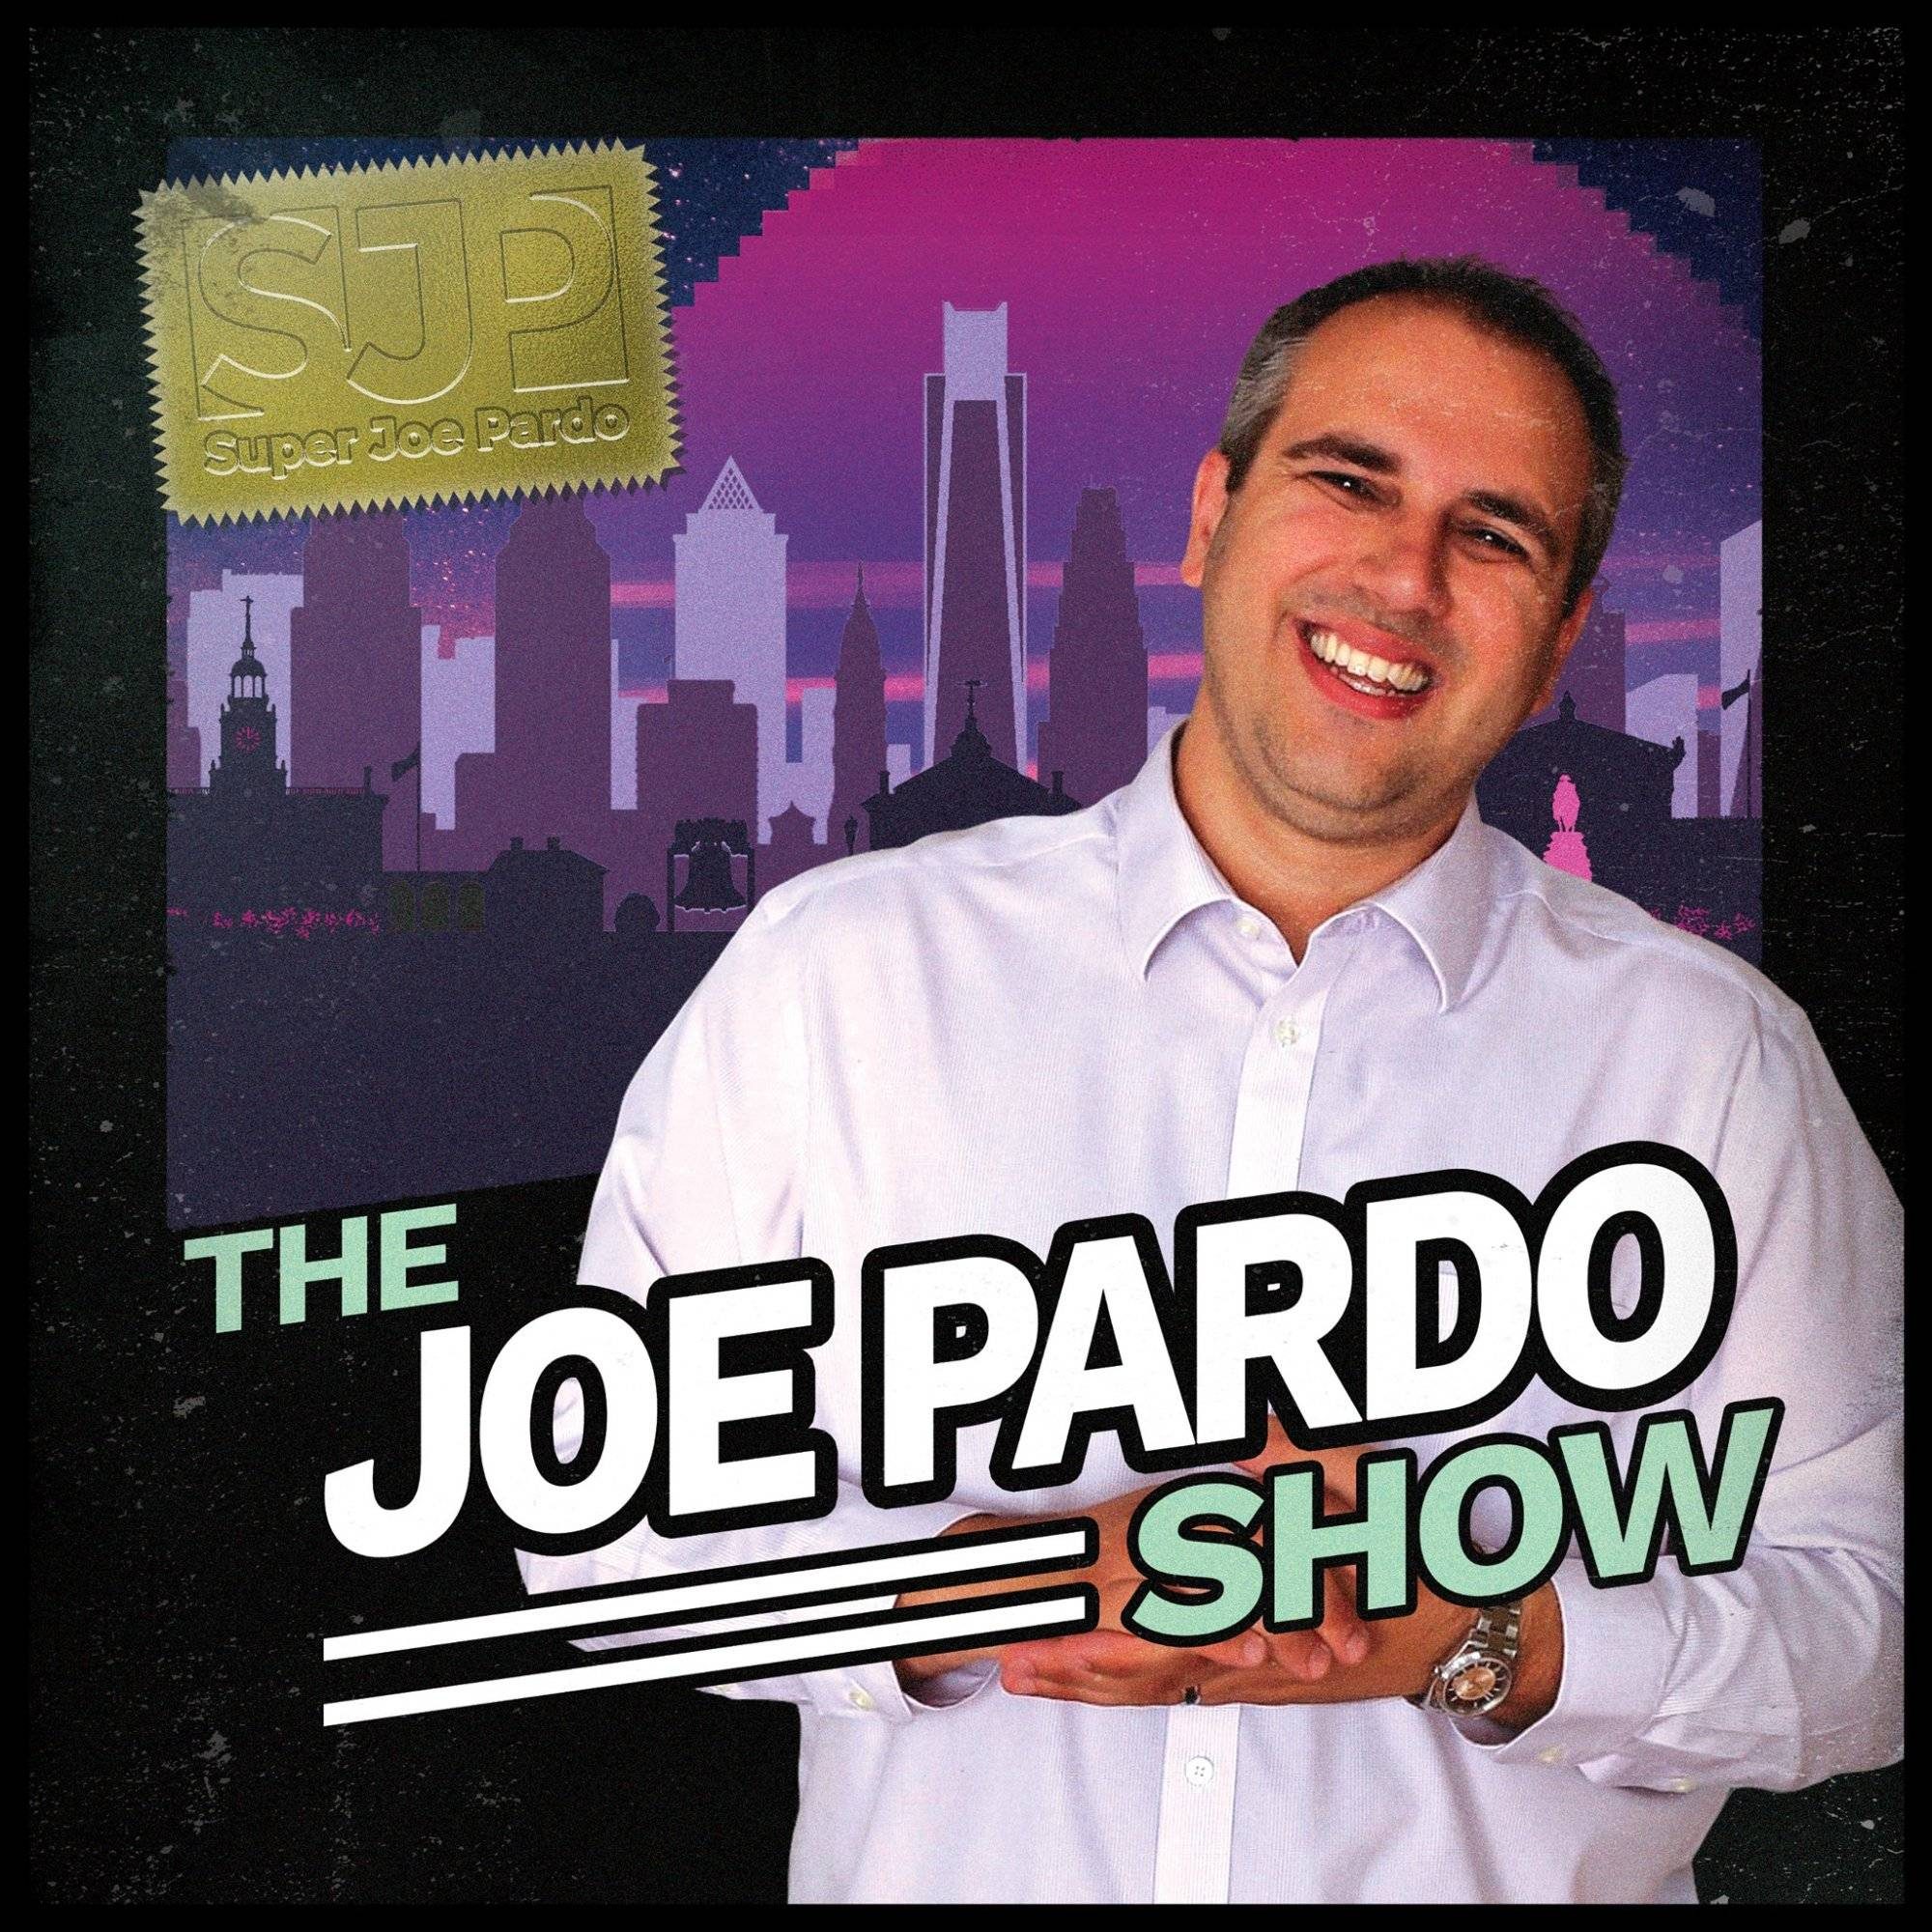 The Joe Pardo Show